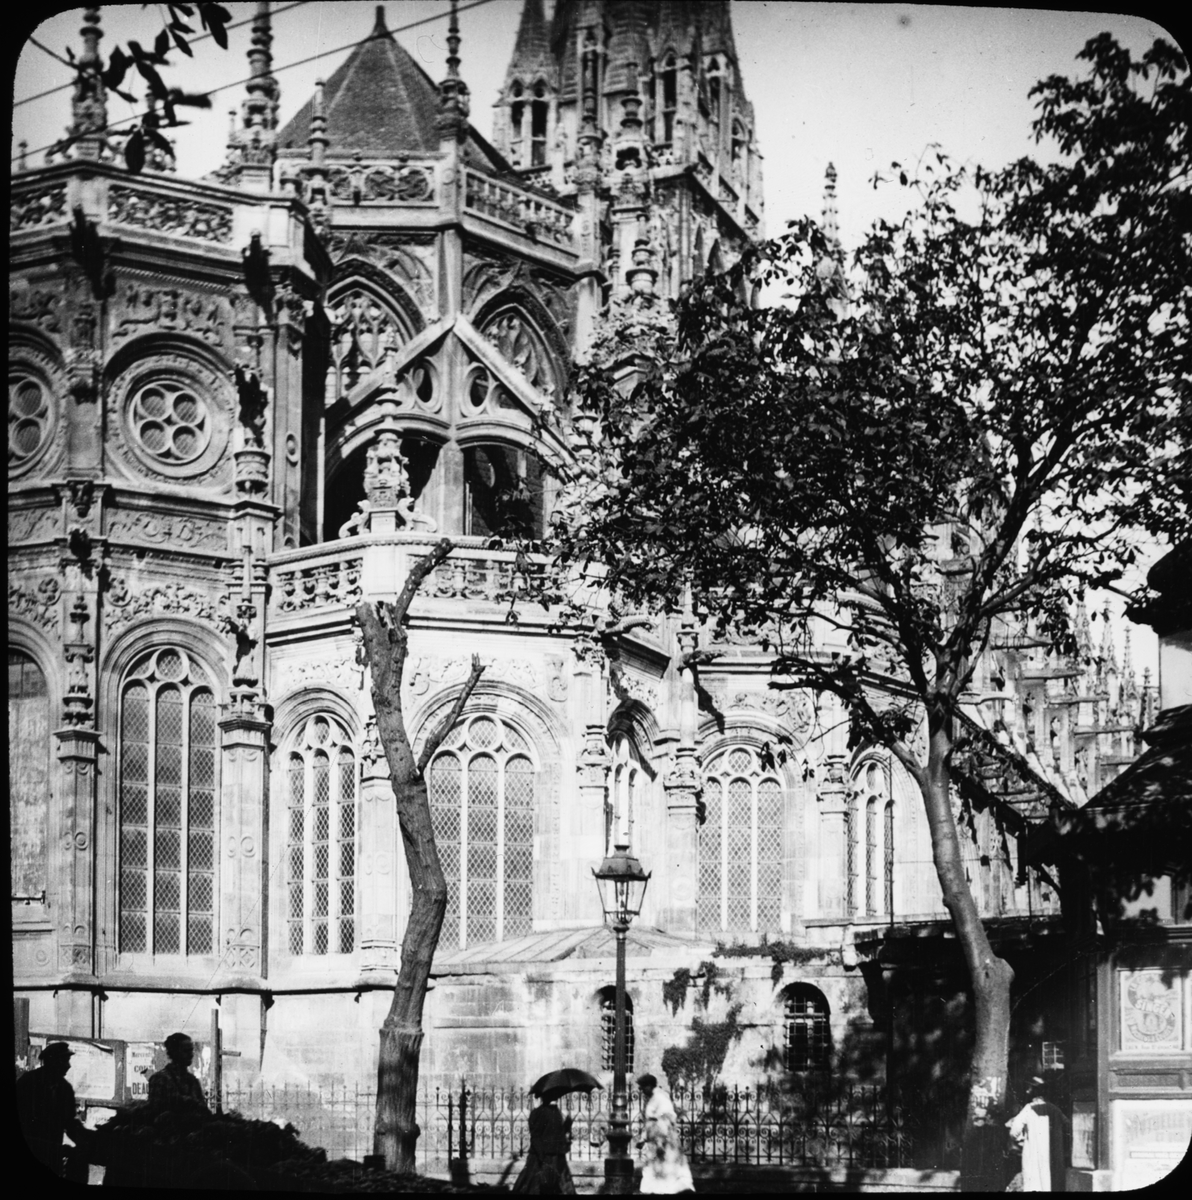 Skioptikonbild med motiv av Église Saint-Pierre i Caen.
Bilden har förvarats i kartong märkt: Resan 1908. Caen 8. X. Text på bild: "Egl. St. Pierre".